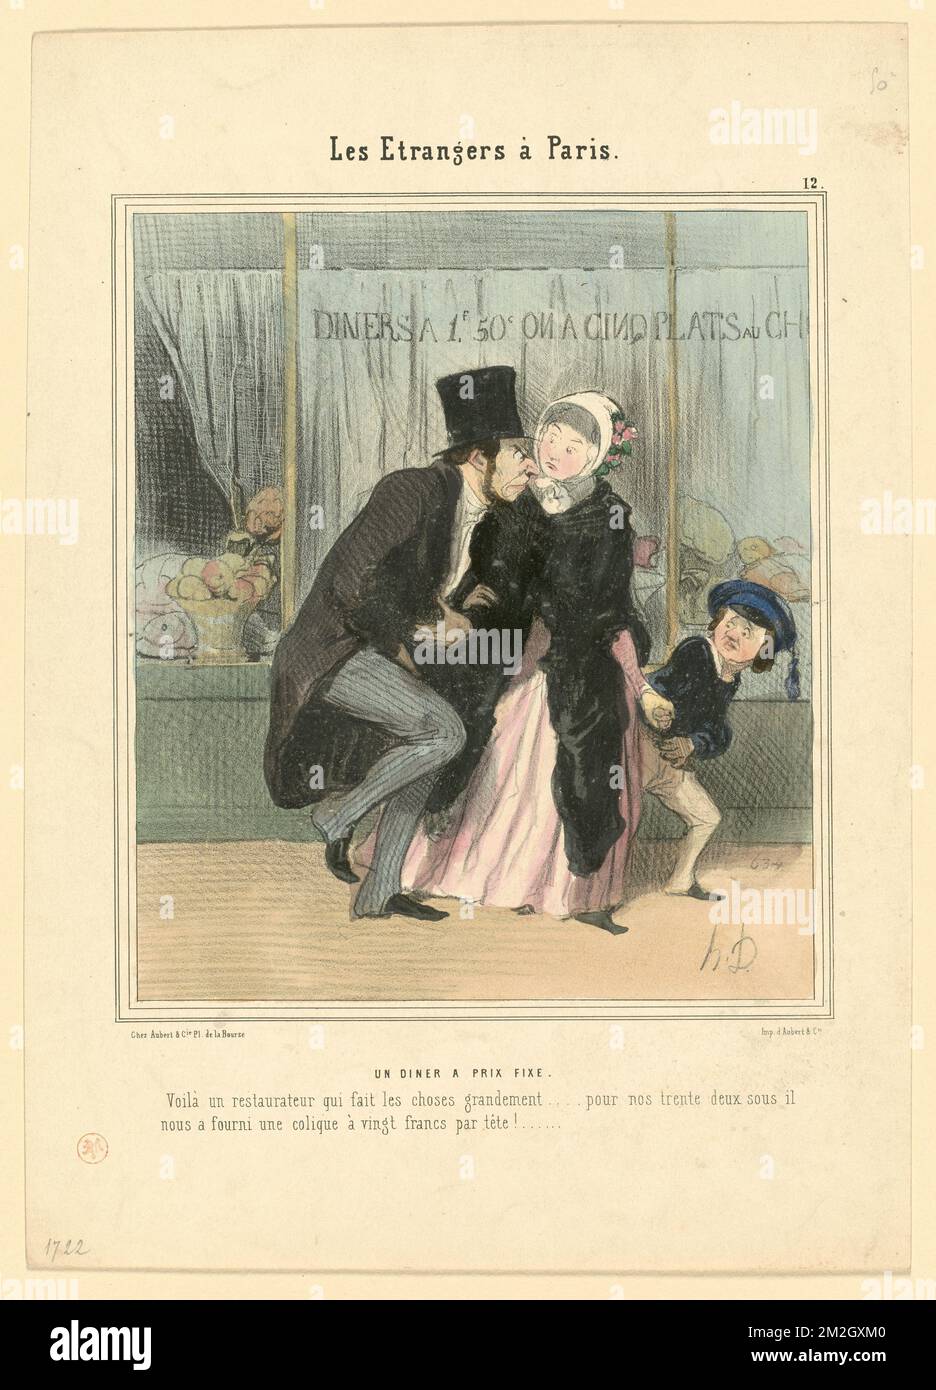 Un diner à prix fixe. Honoré Daumier (1808-1879). Lithographs Stock Photo